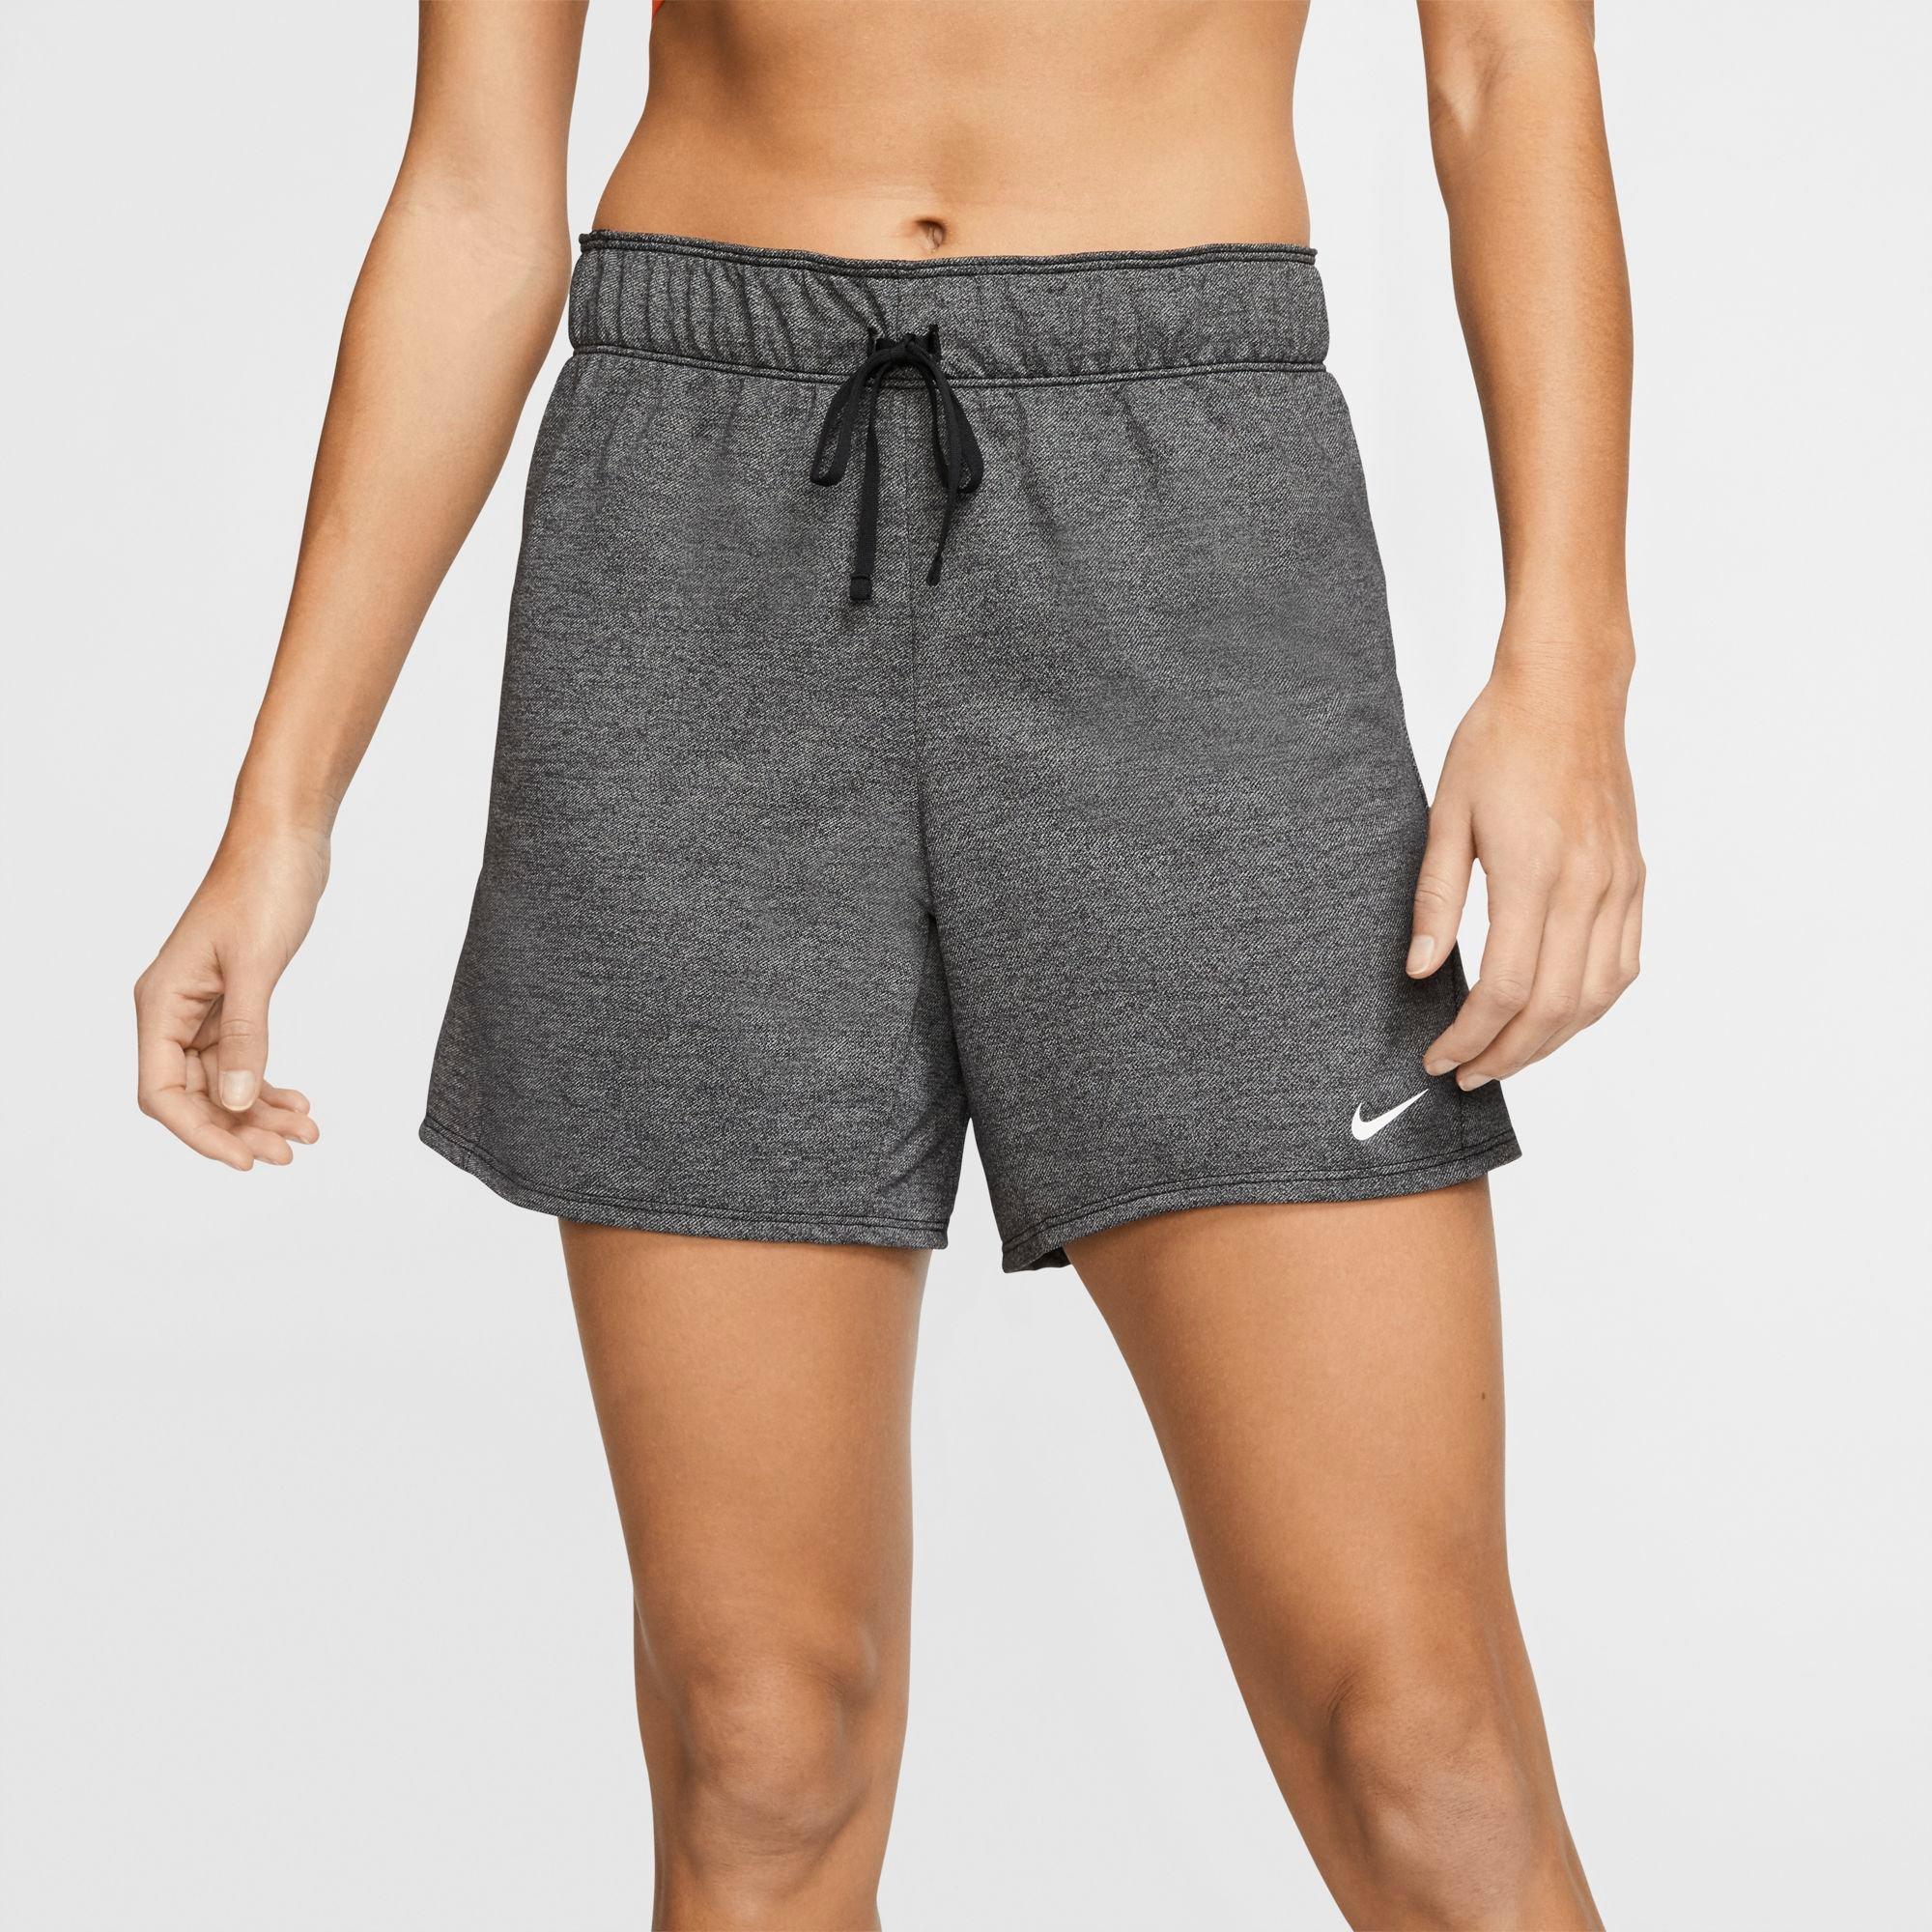 women's dri fit shorts